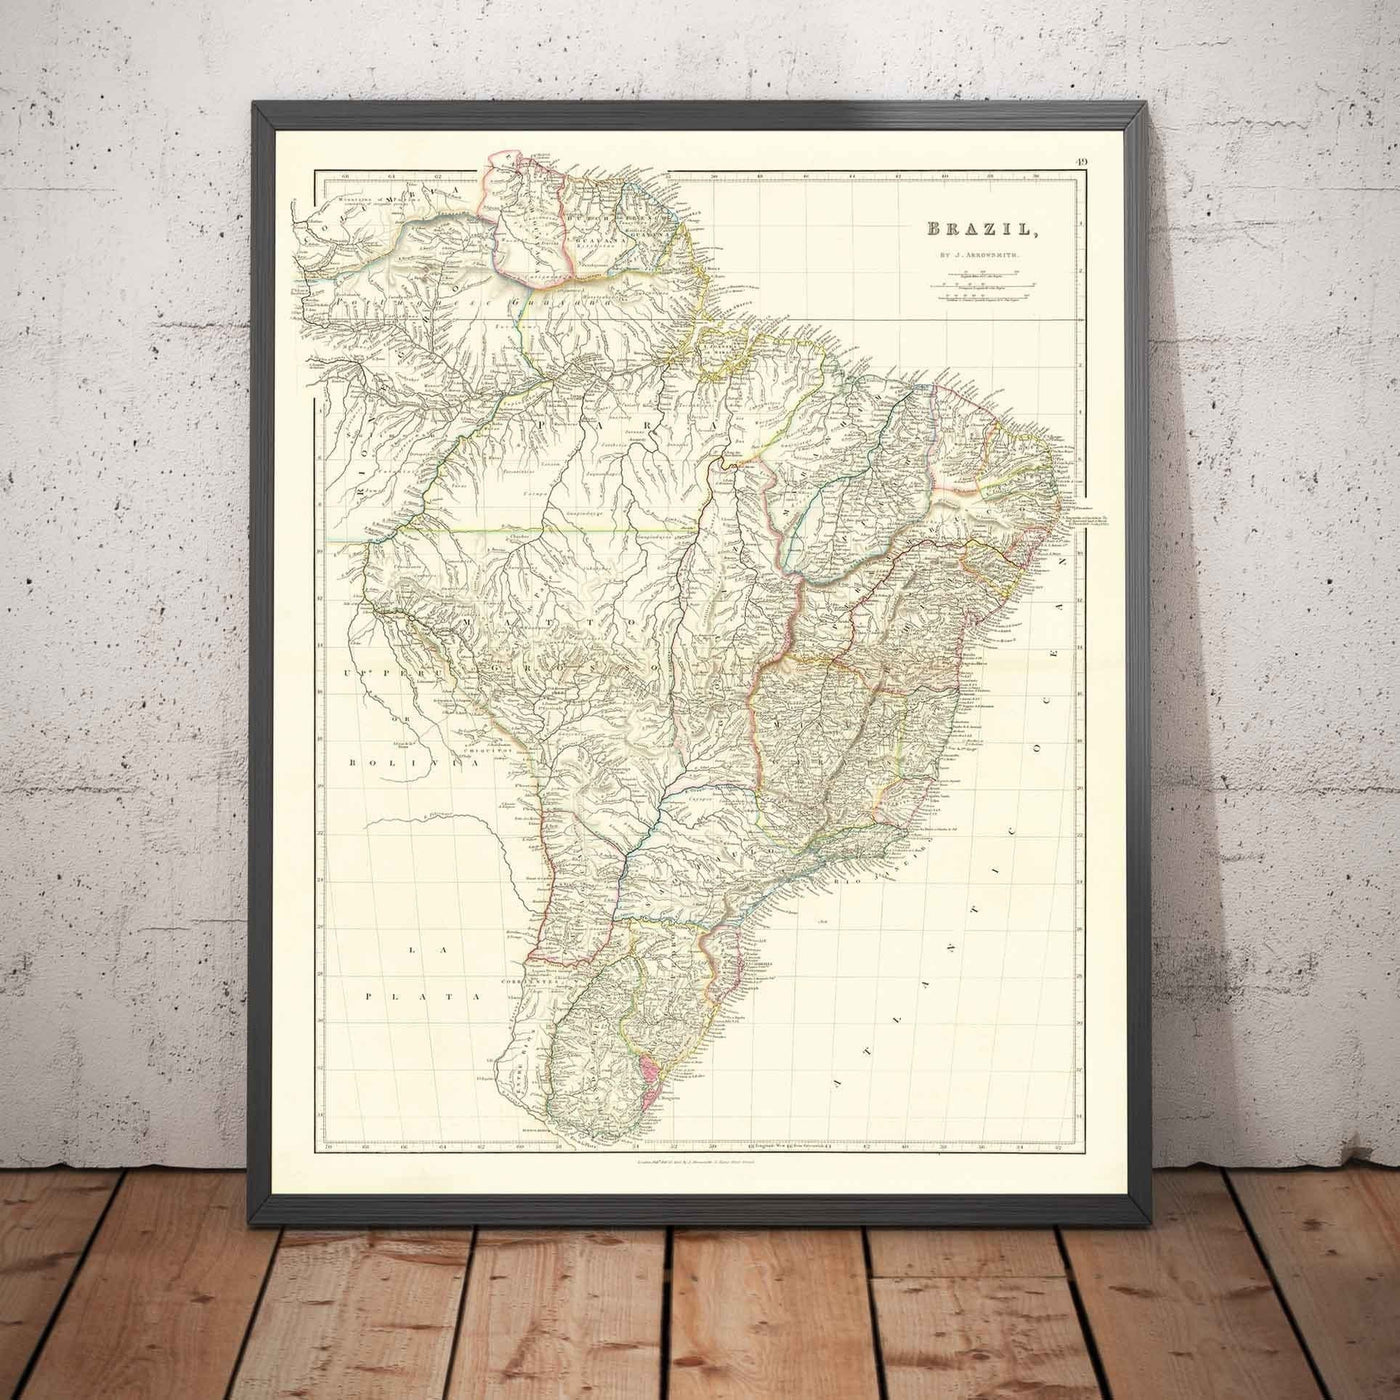 Mapa antiguo de Brasil, 1832 por Arrowsmith - América del Sur colonial - Reino de Portugal, Emperador Pedro II, Río Amazonas